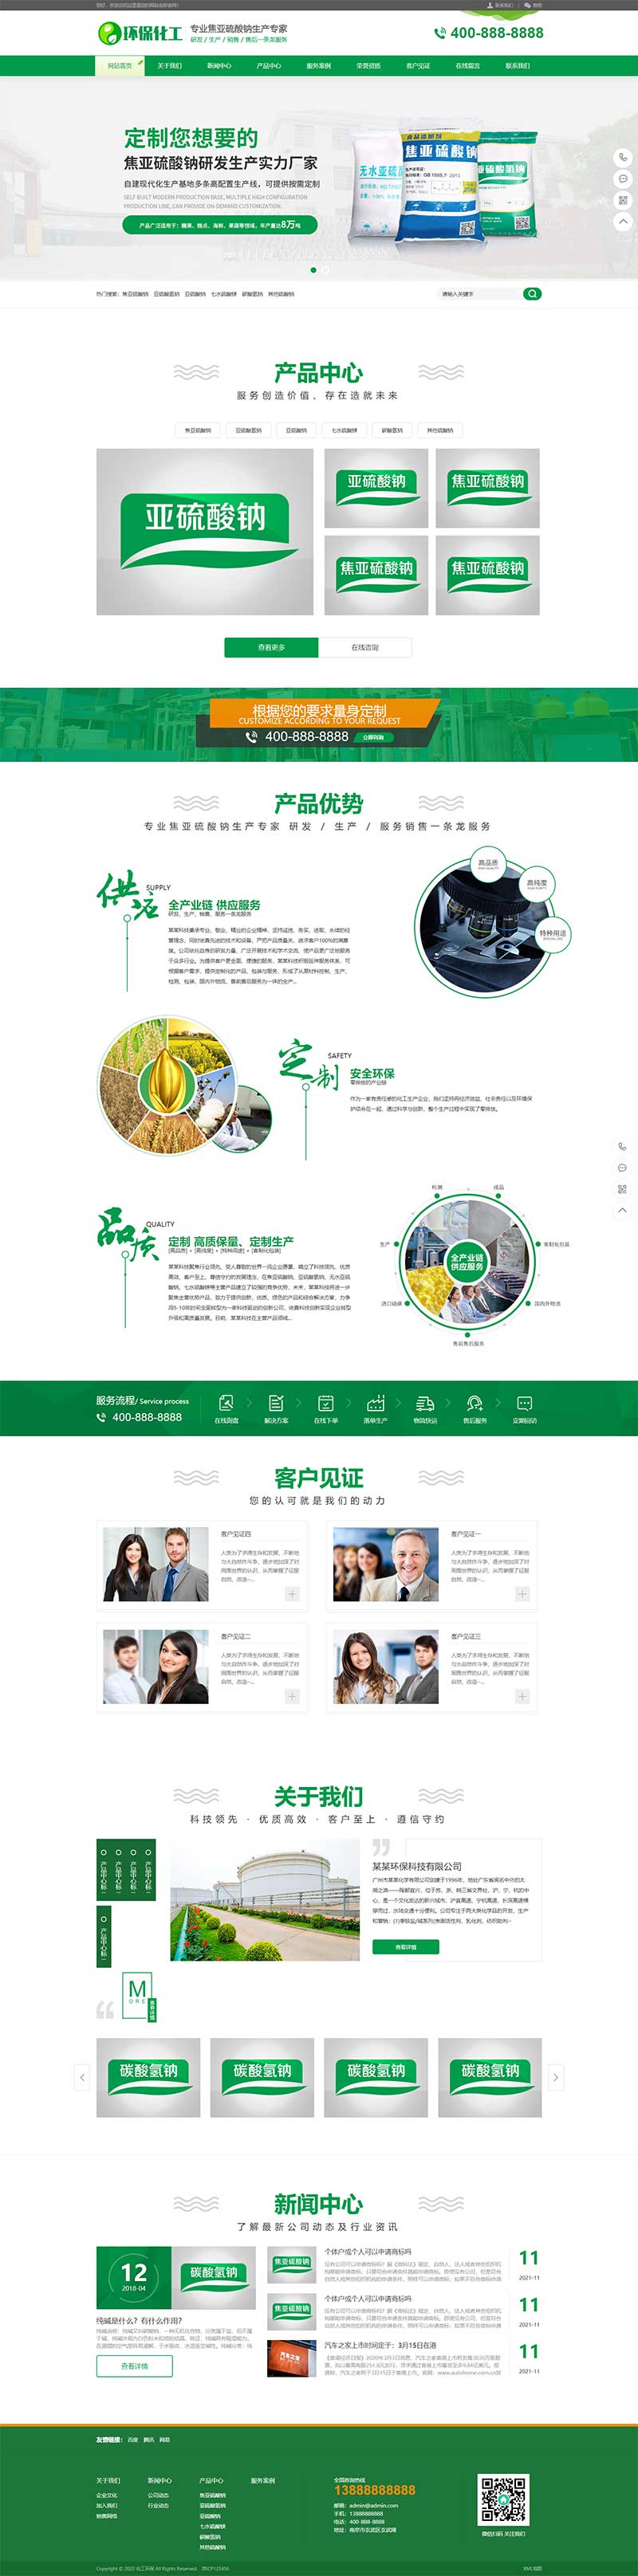 (PC+WAP)绿色营销型化工原料企业网站电脑端模板展示图片